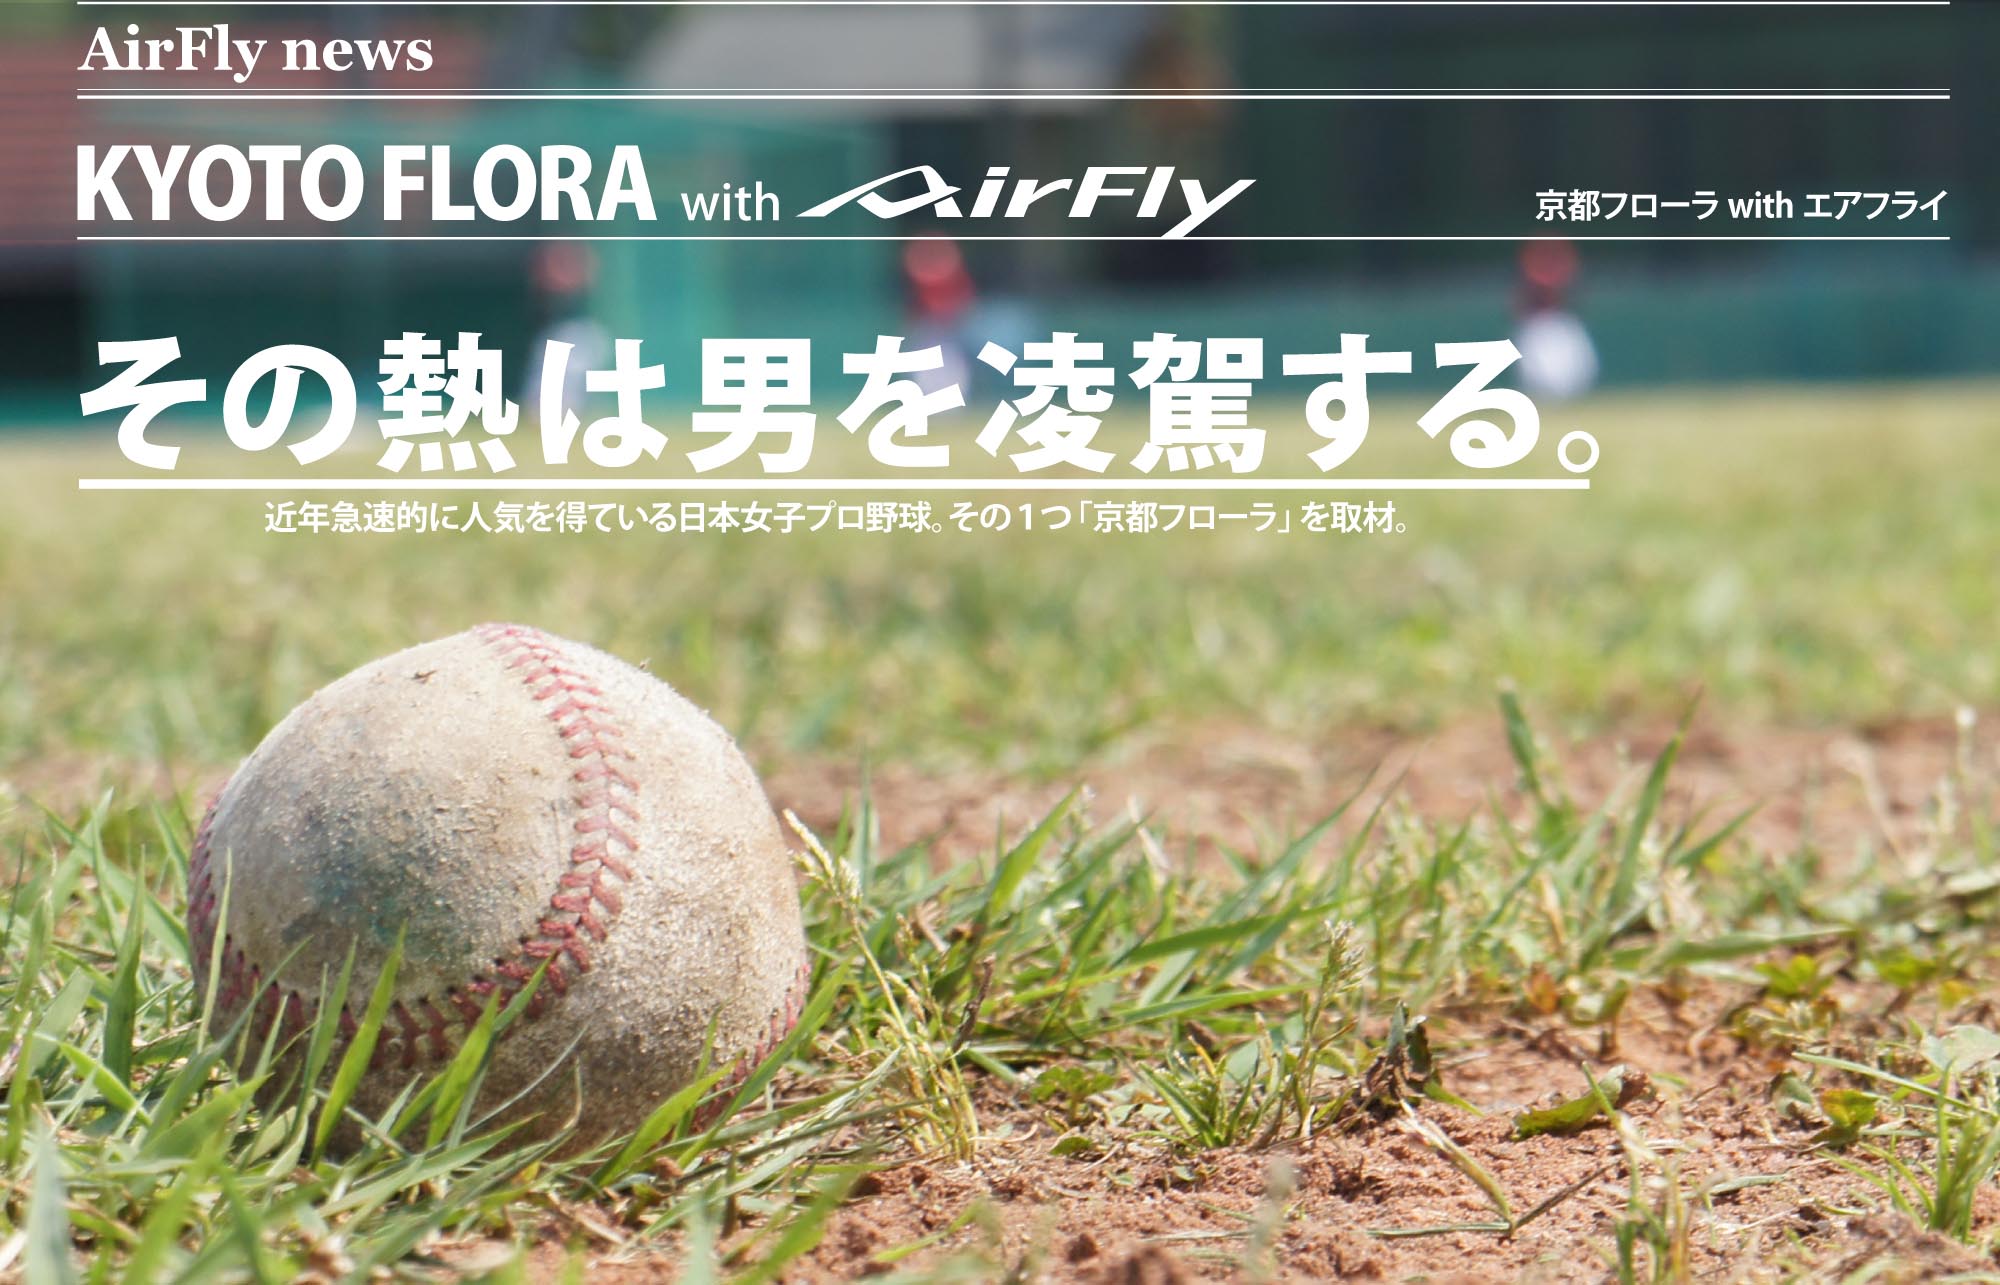 スポーツサングラス   スポーツアイウェア 日本女子プロ野球リーグ 京都フローラ　エアフライ